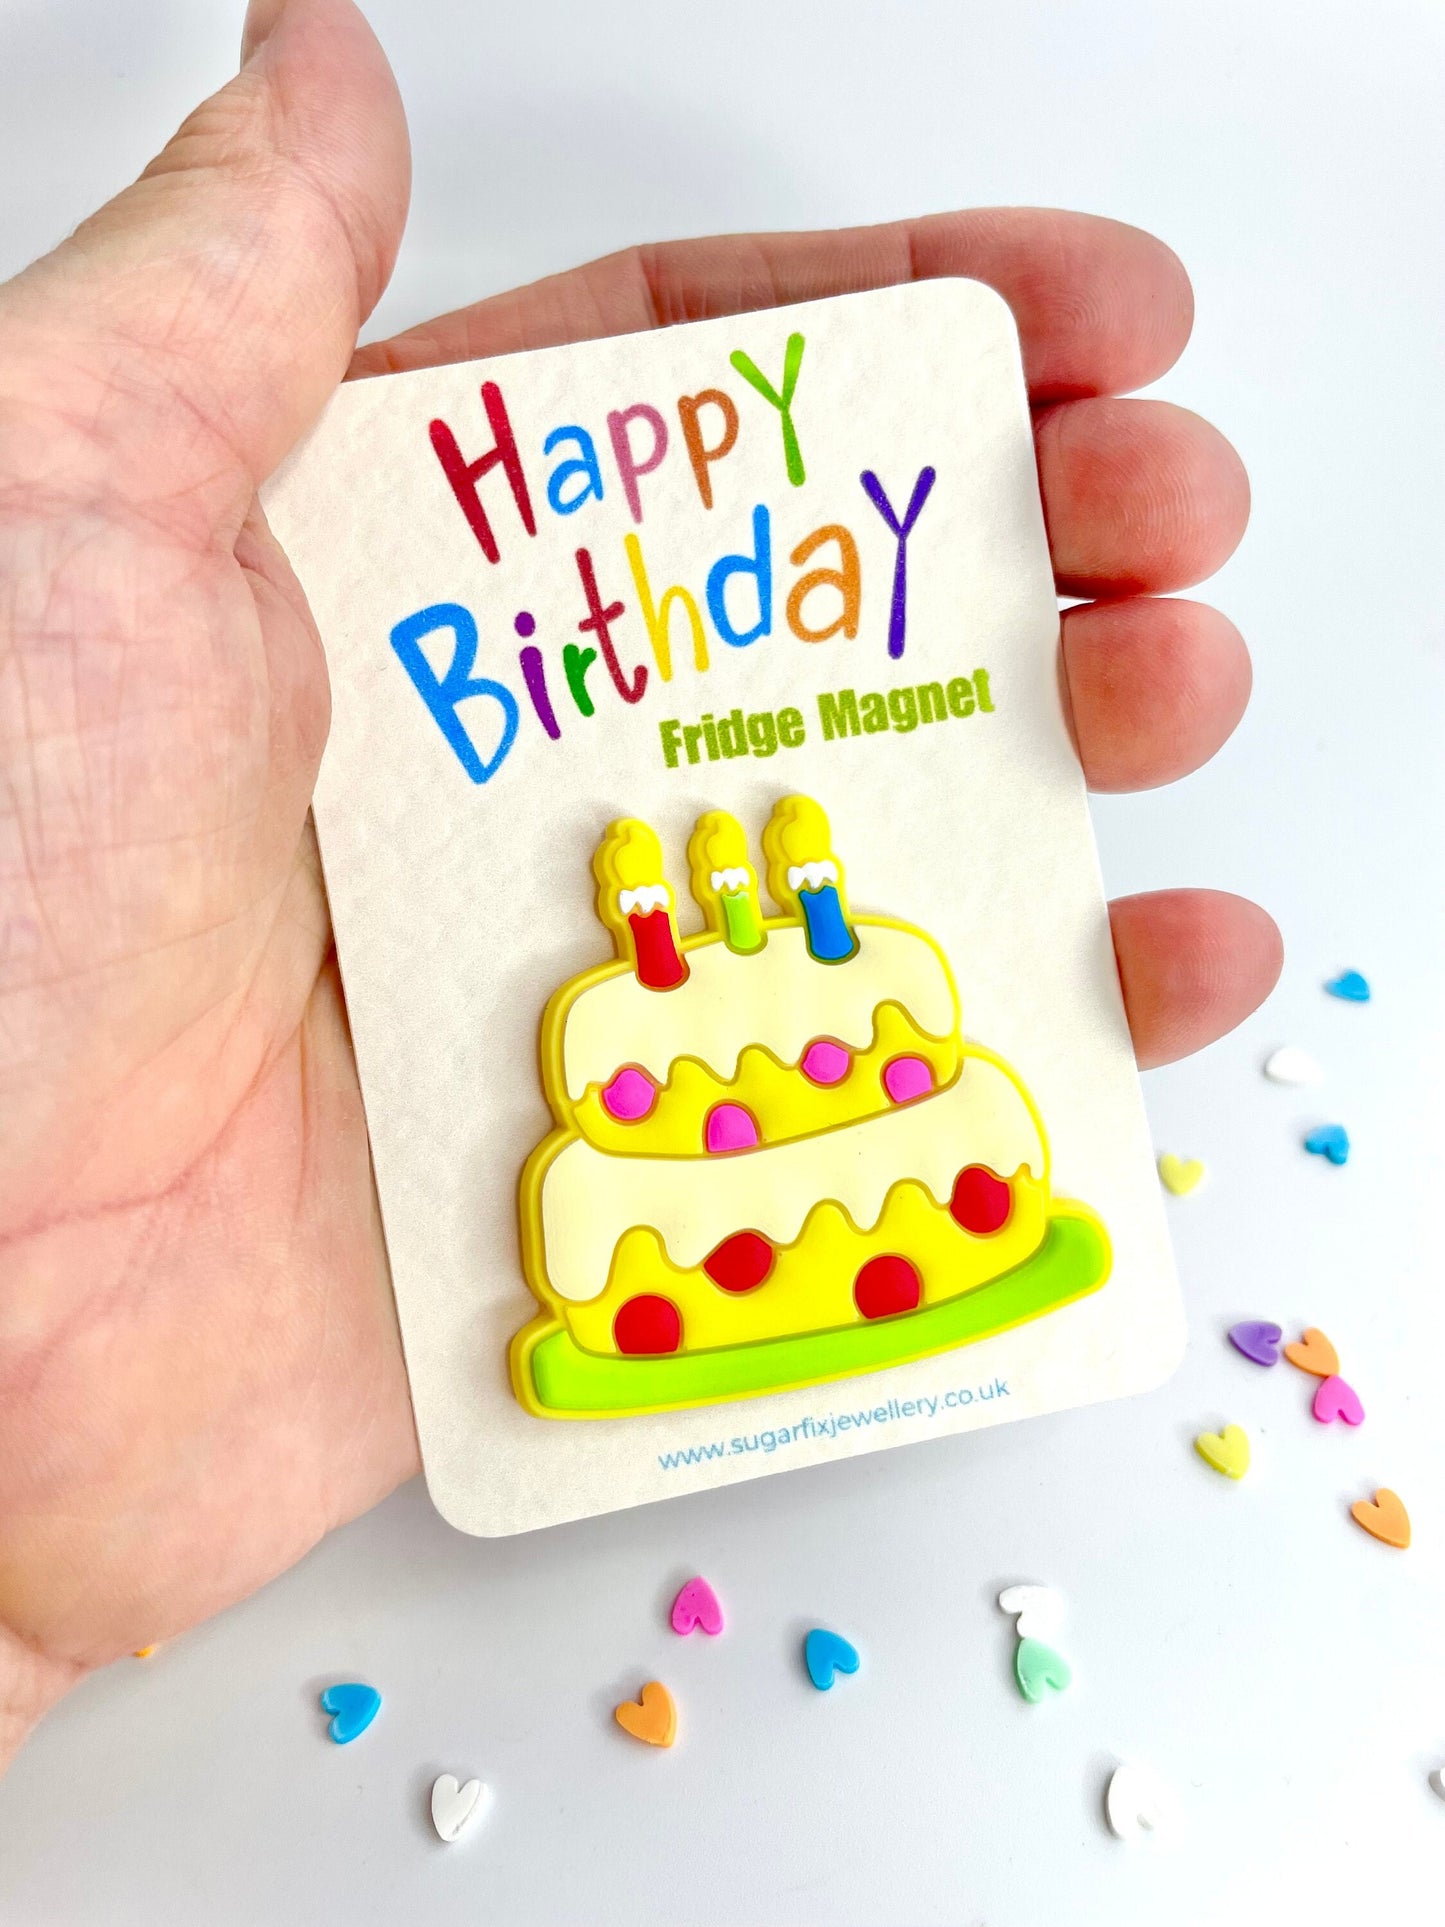 Happy Birthday Fridge Magnet - Cake Pocket Hug